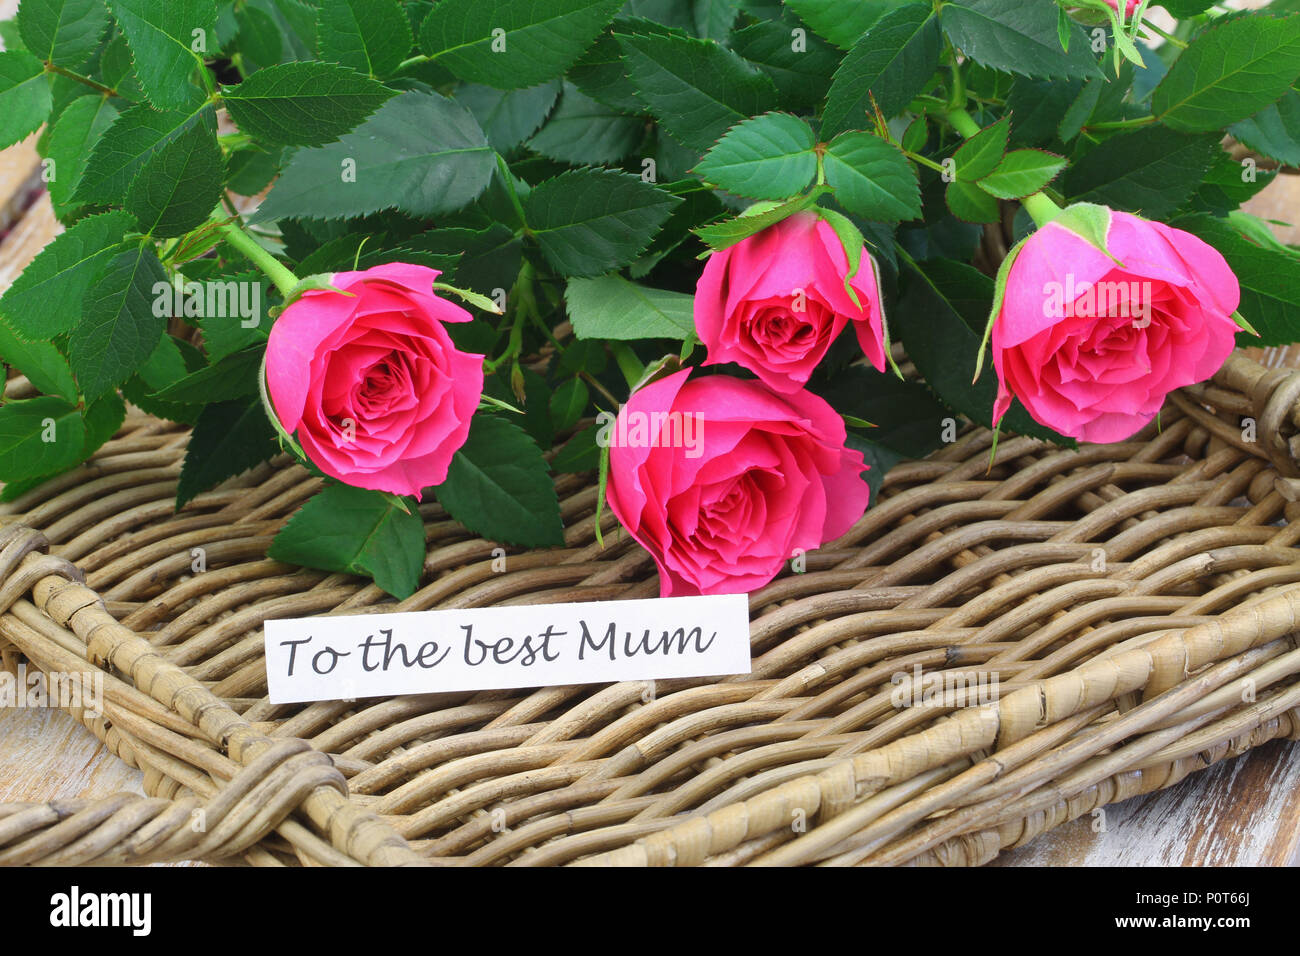 Pour la meilleure carte mère rose avec des roses sauvages sur la surface en osier Banque D'Images